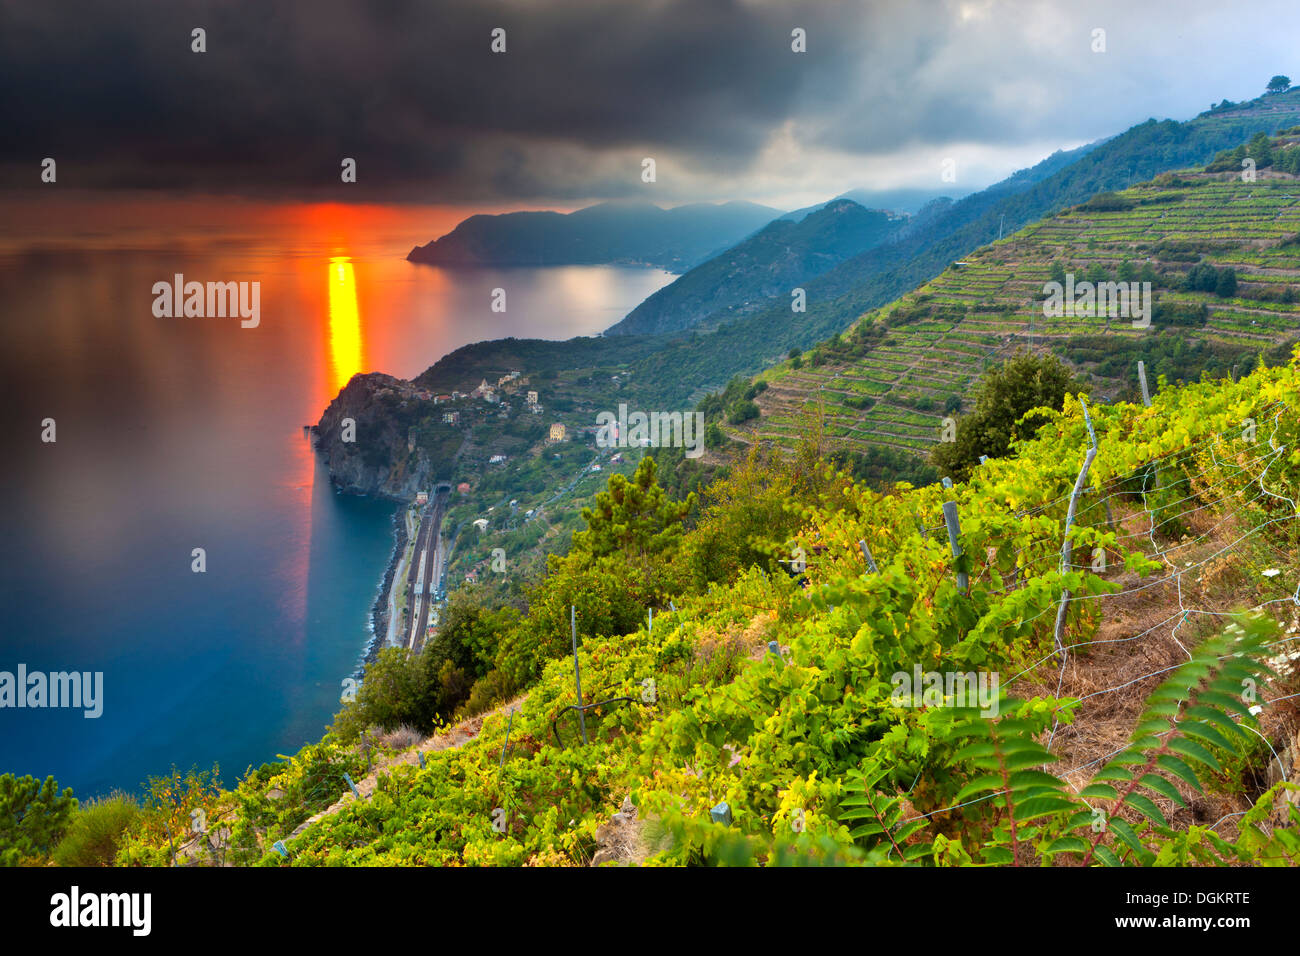 Ein Weinberg mit Blick auf die Küste auf den Klippen des Mittelmeeres an der italienischen Riviera. Stockfoto